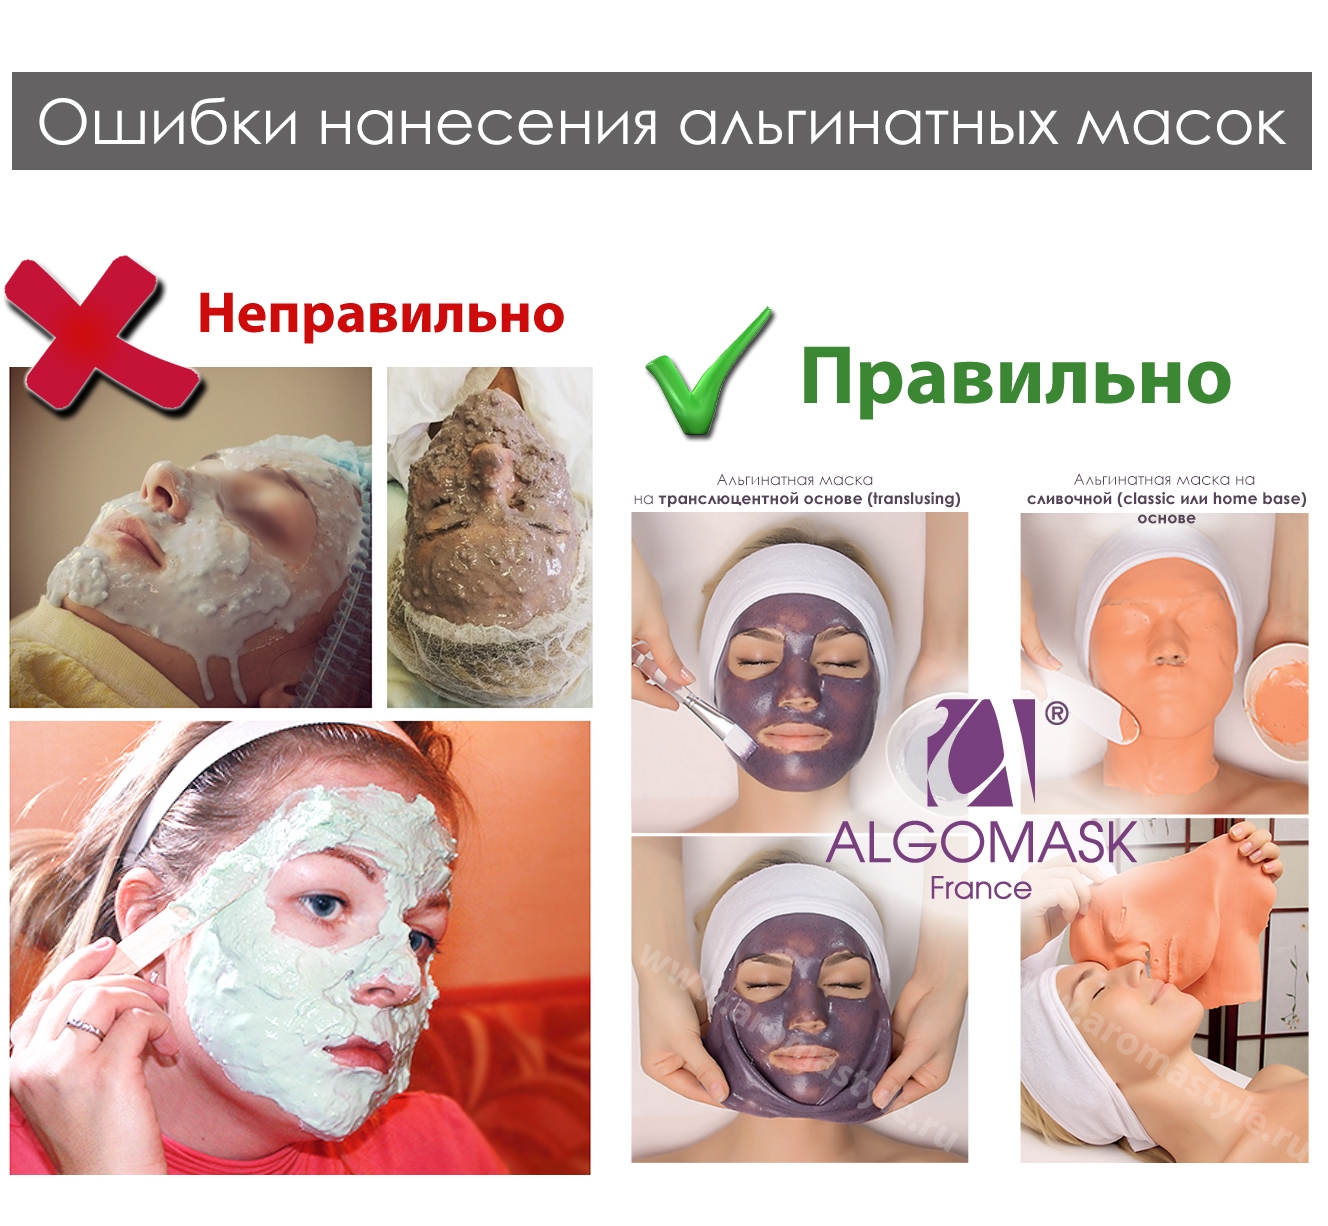 Сколько держать альгинатную. Маска для лица. Альгинатная маска для лица. Интересные маски для лица.